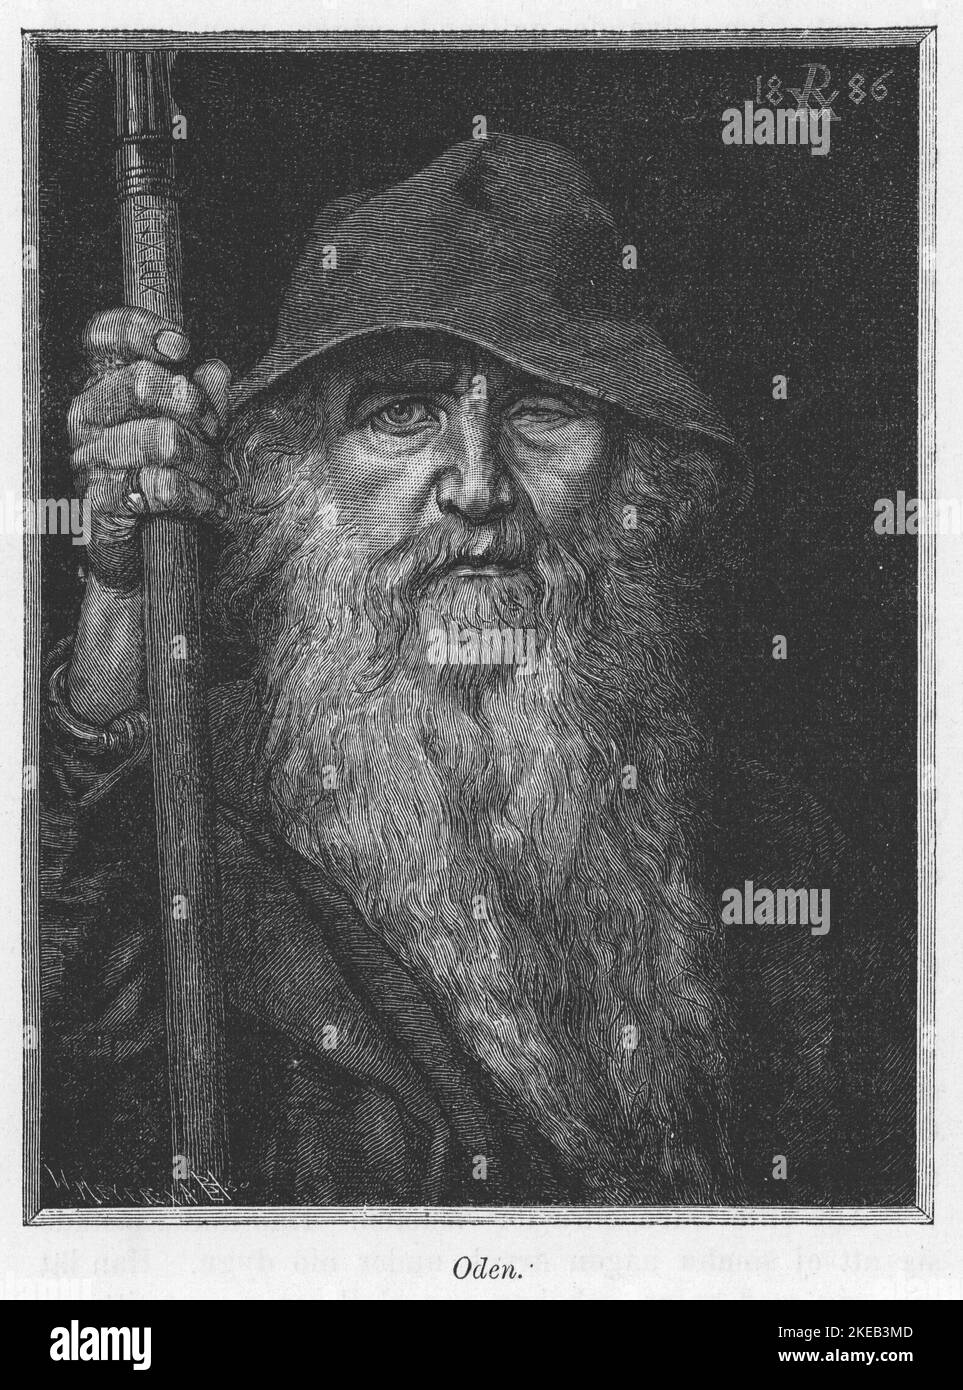 Odin. Le Dieu principal dans la mythologie de Norse décrit comme un vieil homme immensément sage, à un seul œil. Illustration d'Odin en tant que Wanderer datant de 1886 réalisée à partir d'une peinture originale de Georg von Rosen. Réf. CV69 Banque D'Images